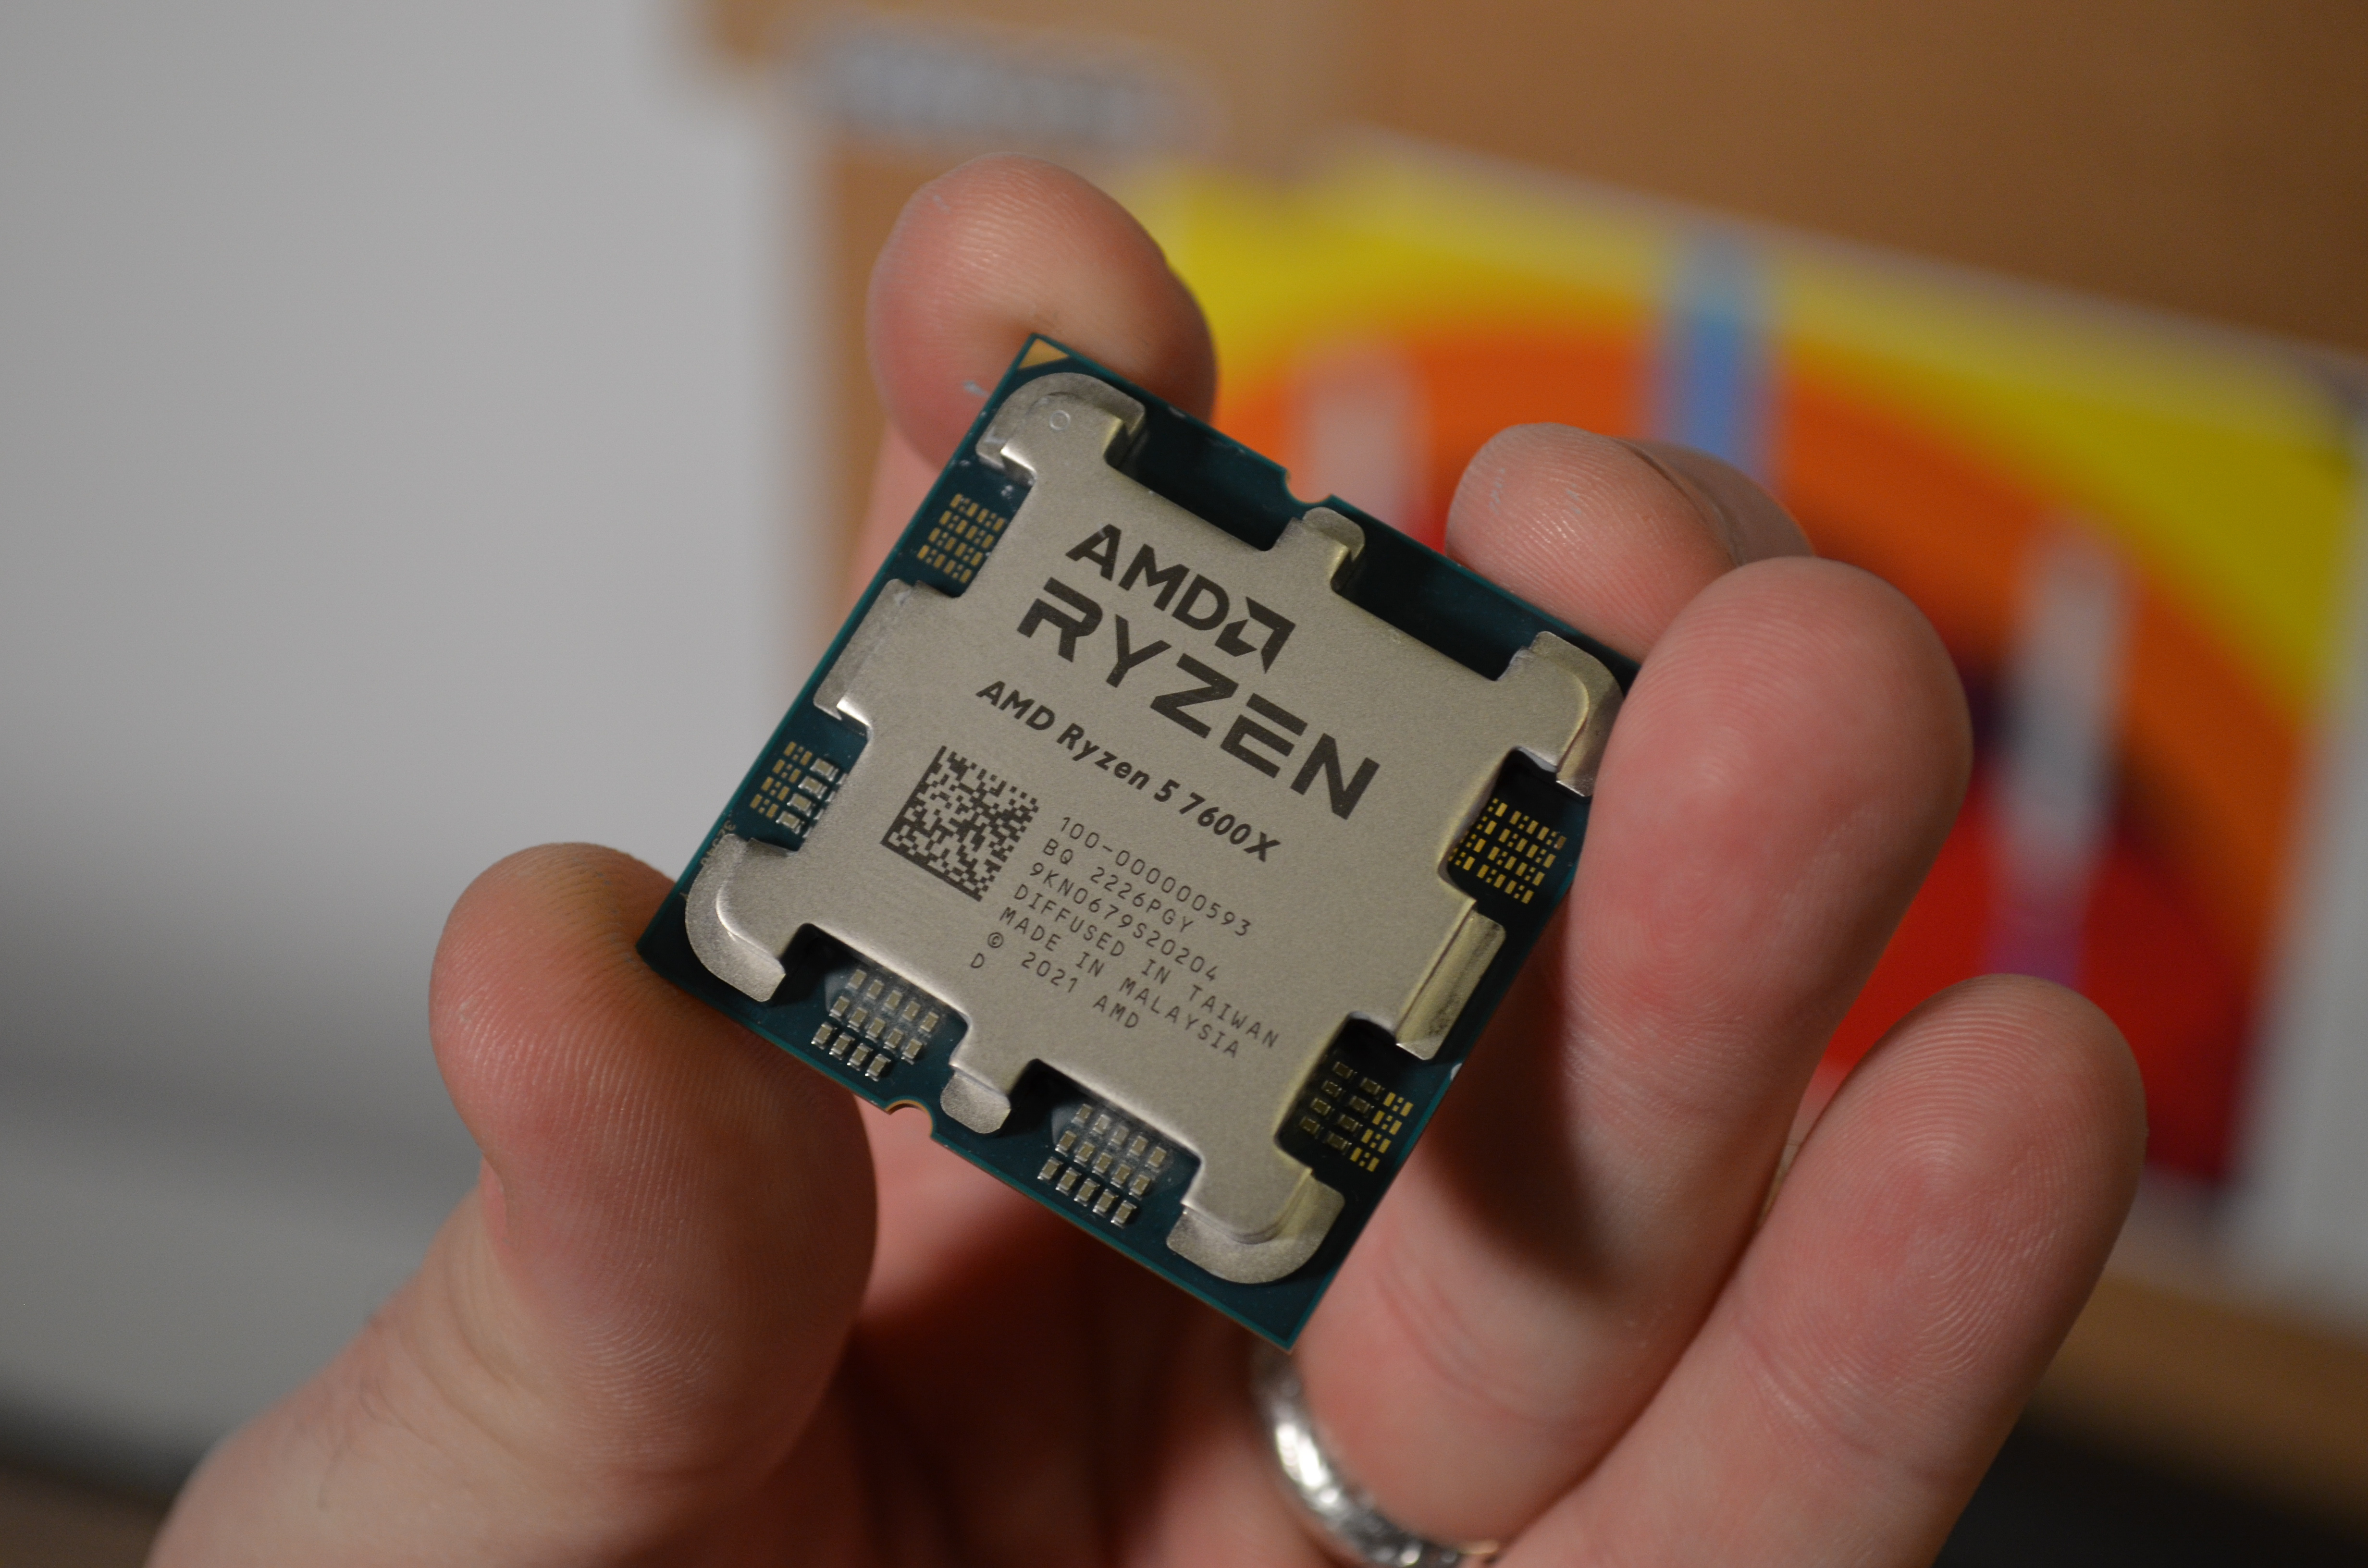 AMD Ryzen 5 7600X holdes forsiktig med fingrene